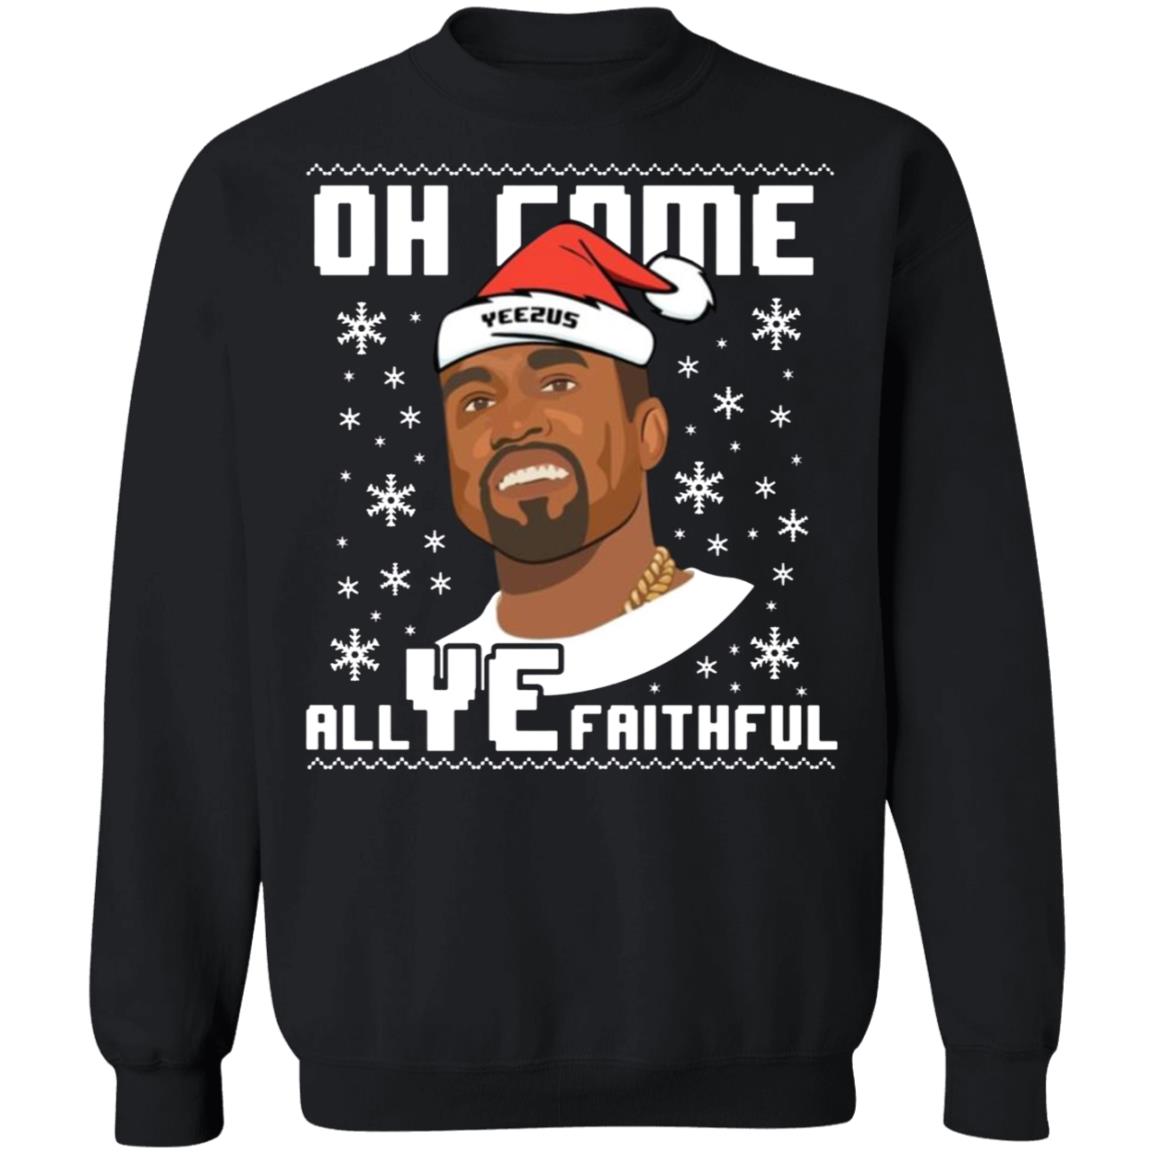 Kanye West Oh come All Ye faithful Christmas sweatshirt, long sleeve,